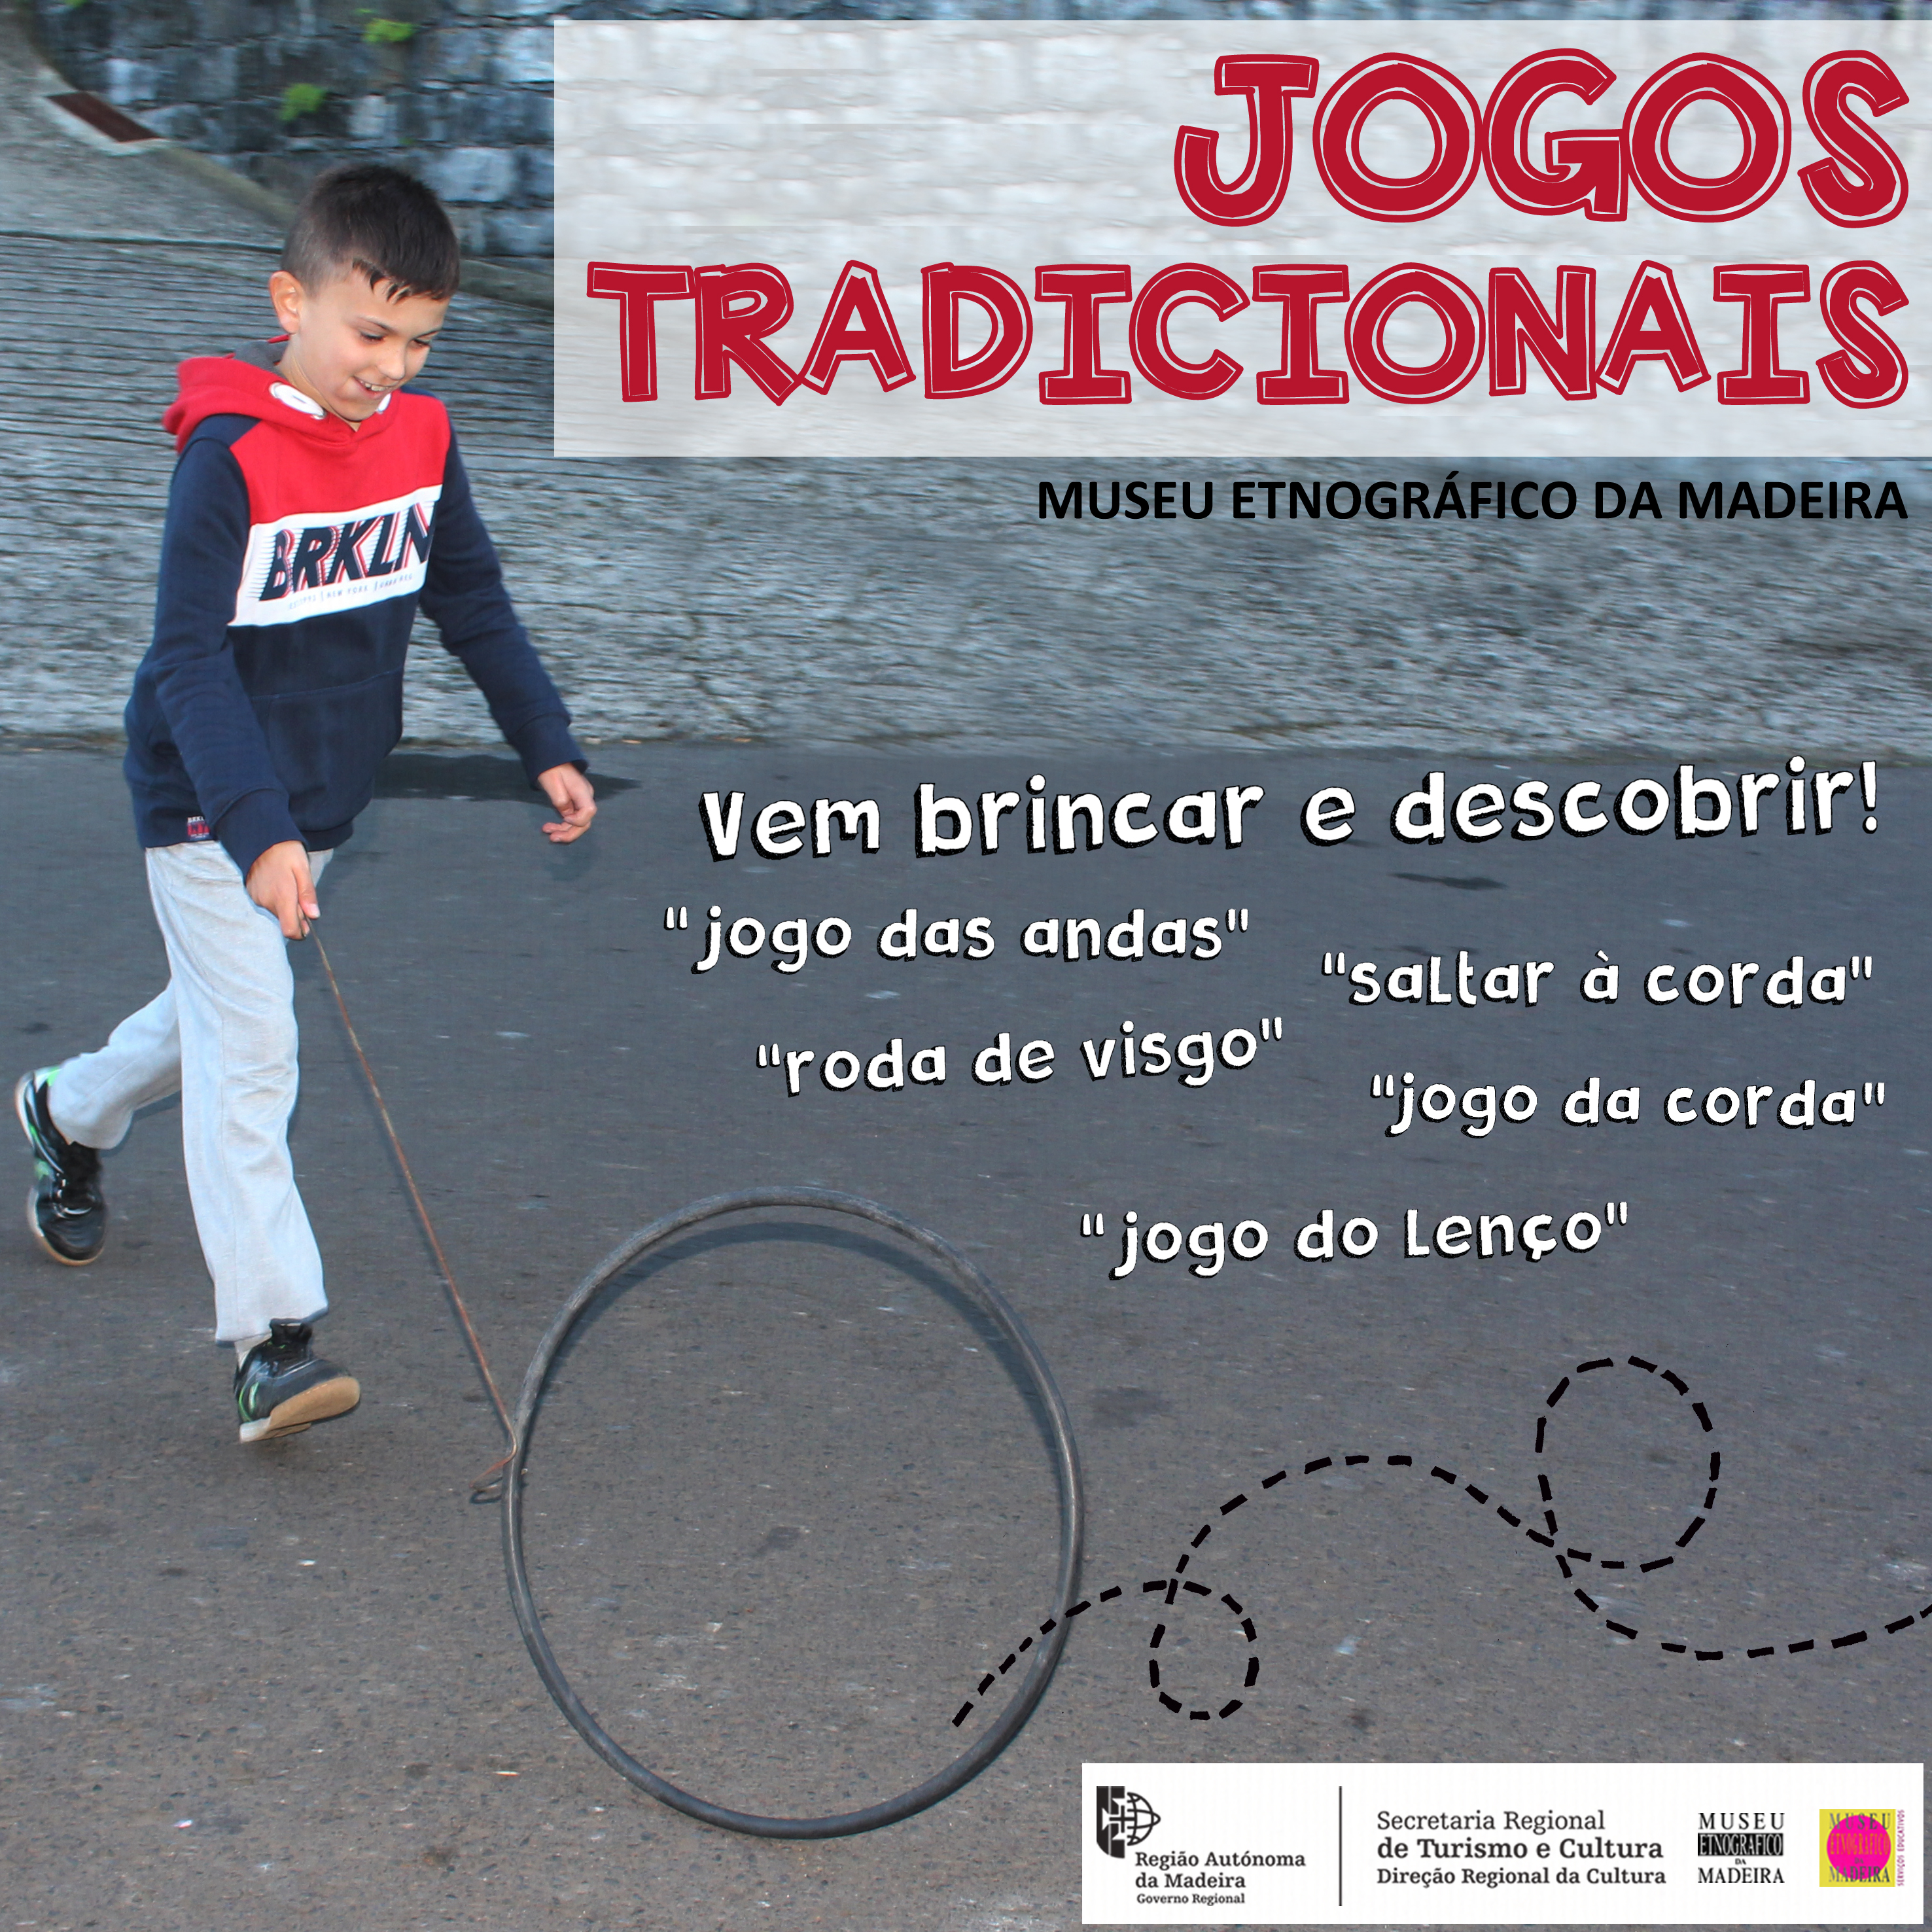 Obra etnográfica (I) - Jogos e Rimas Infantis de Portugal